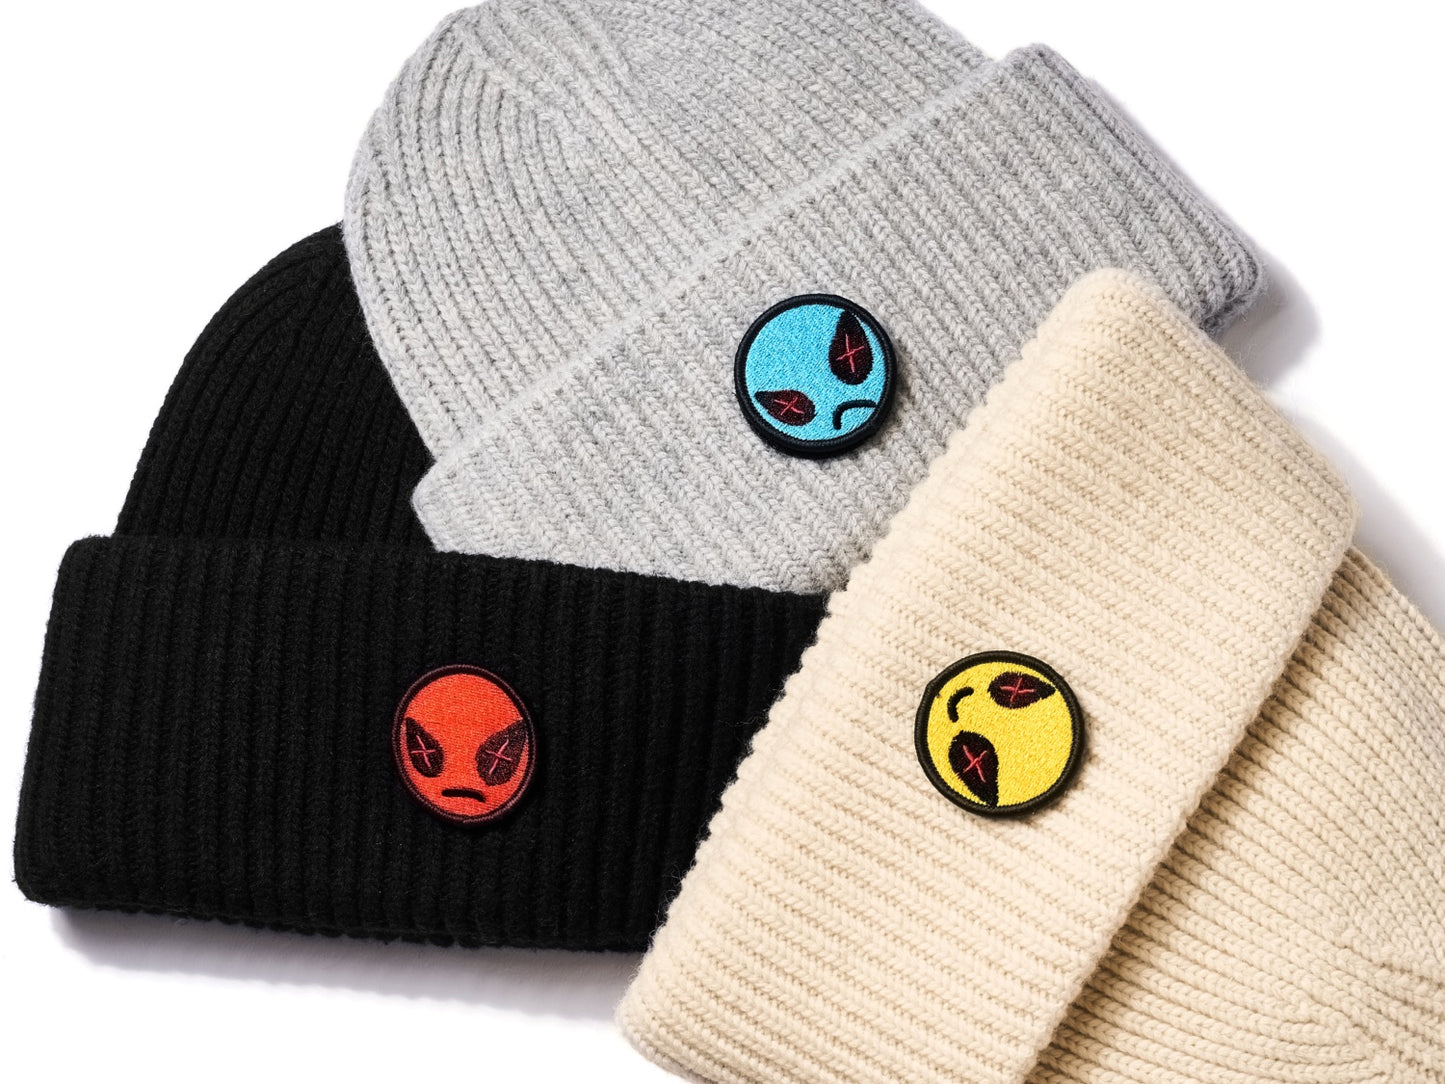 "Mood" Emoji Beanie Hat